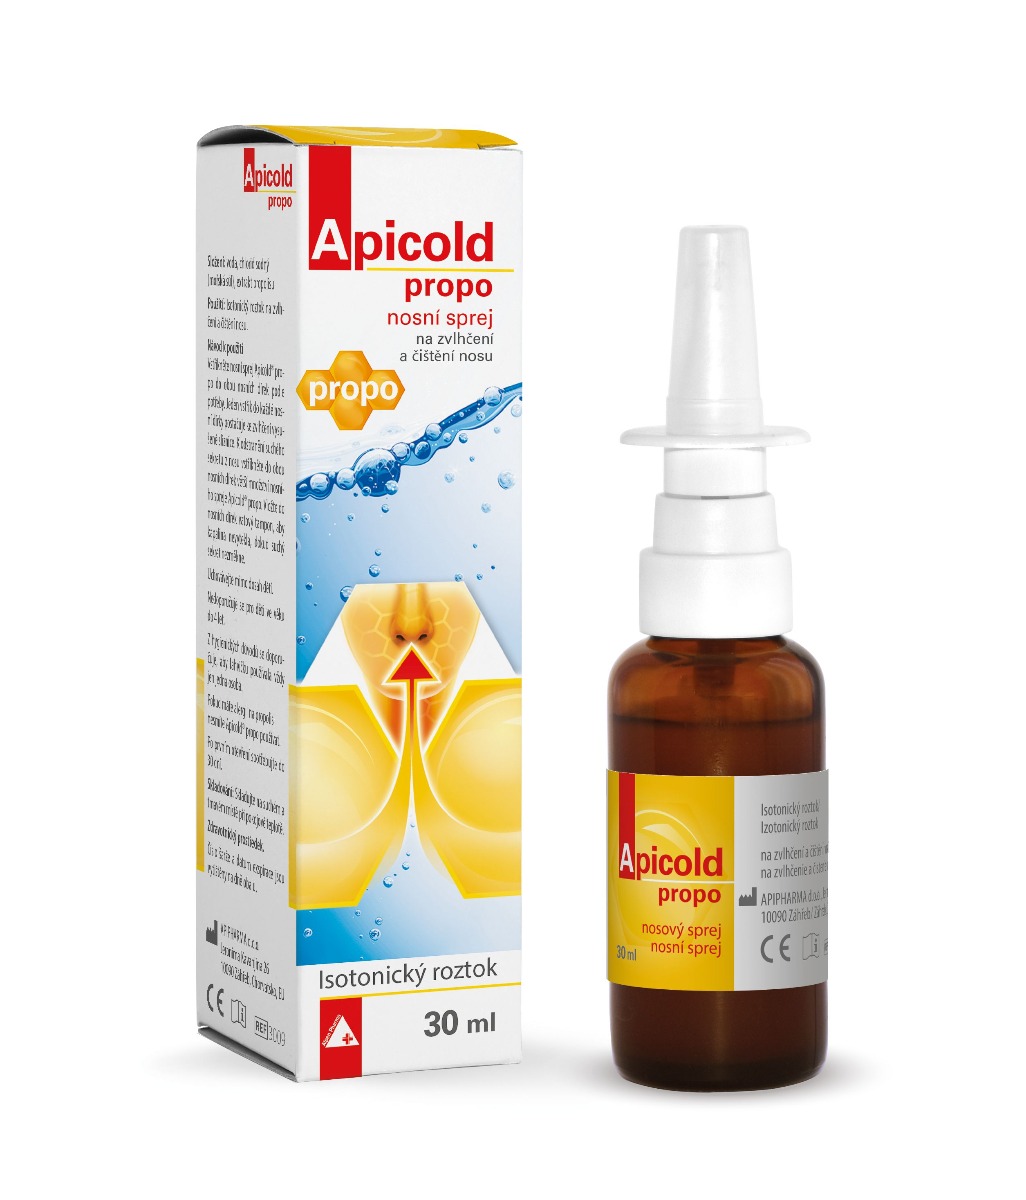 Apicold Propo nosní sprej 30 ml Apicold